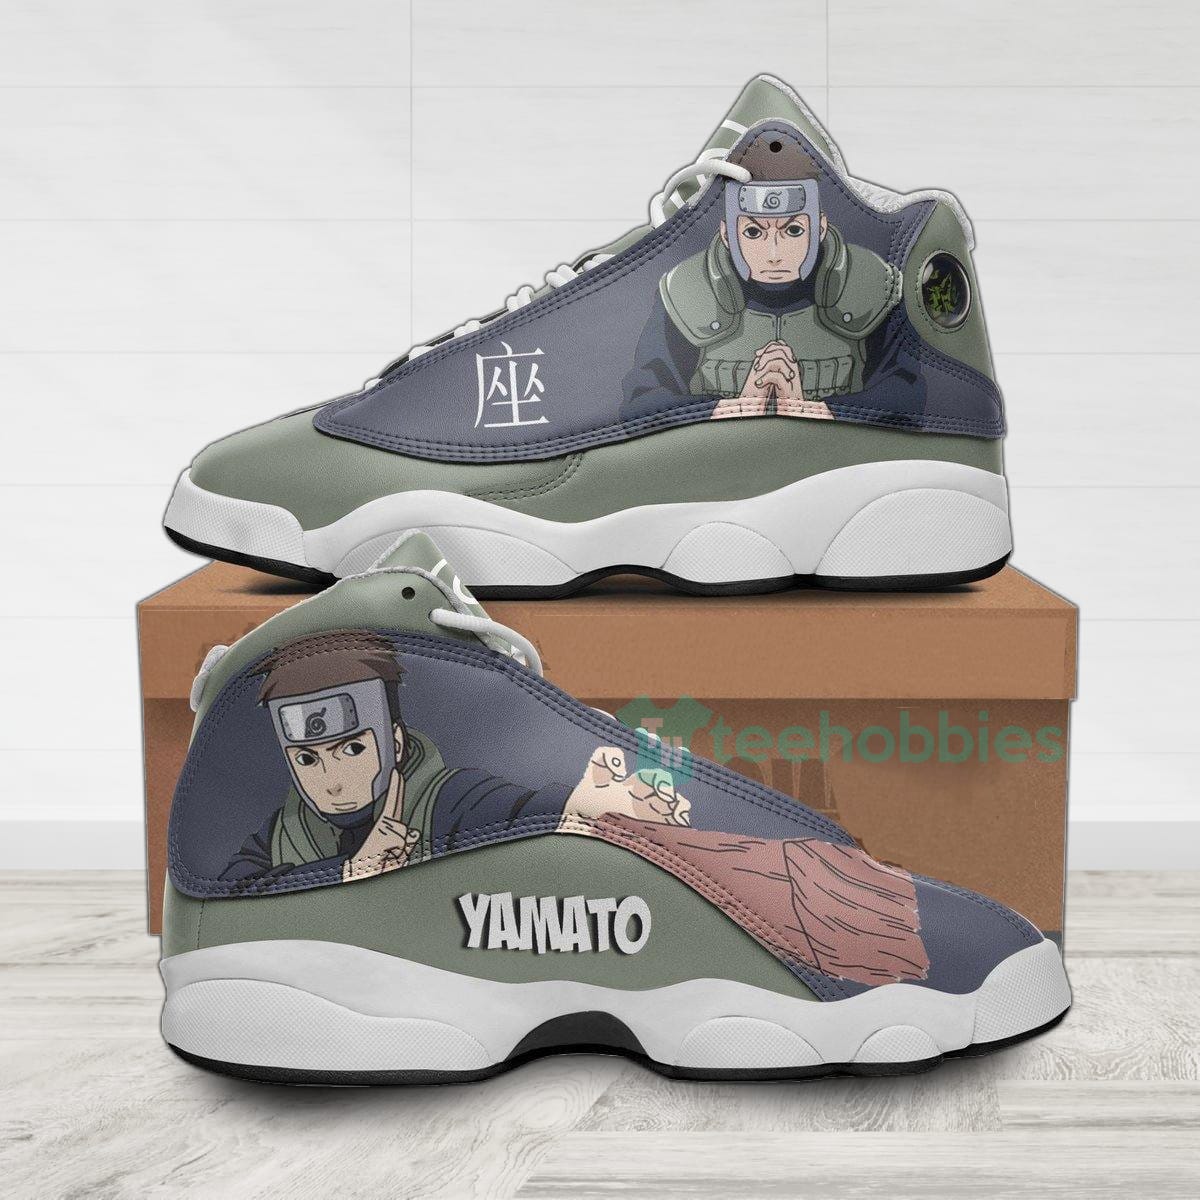 Yamato Custom Nrt Anime Air Jordan 13 Shoes